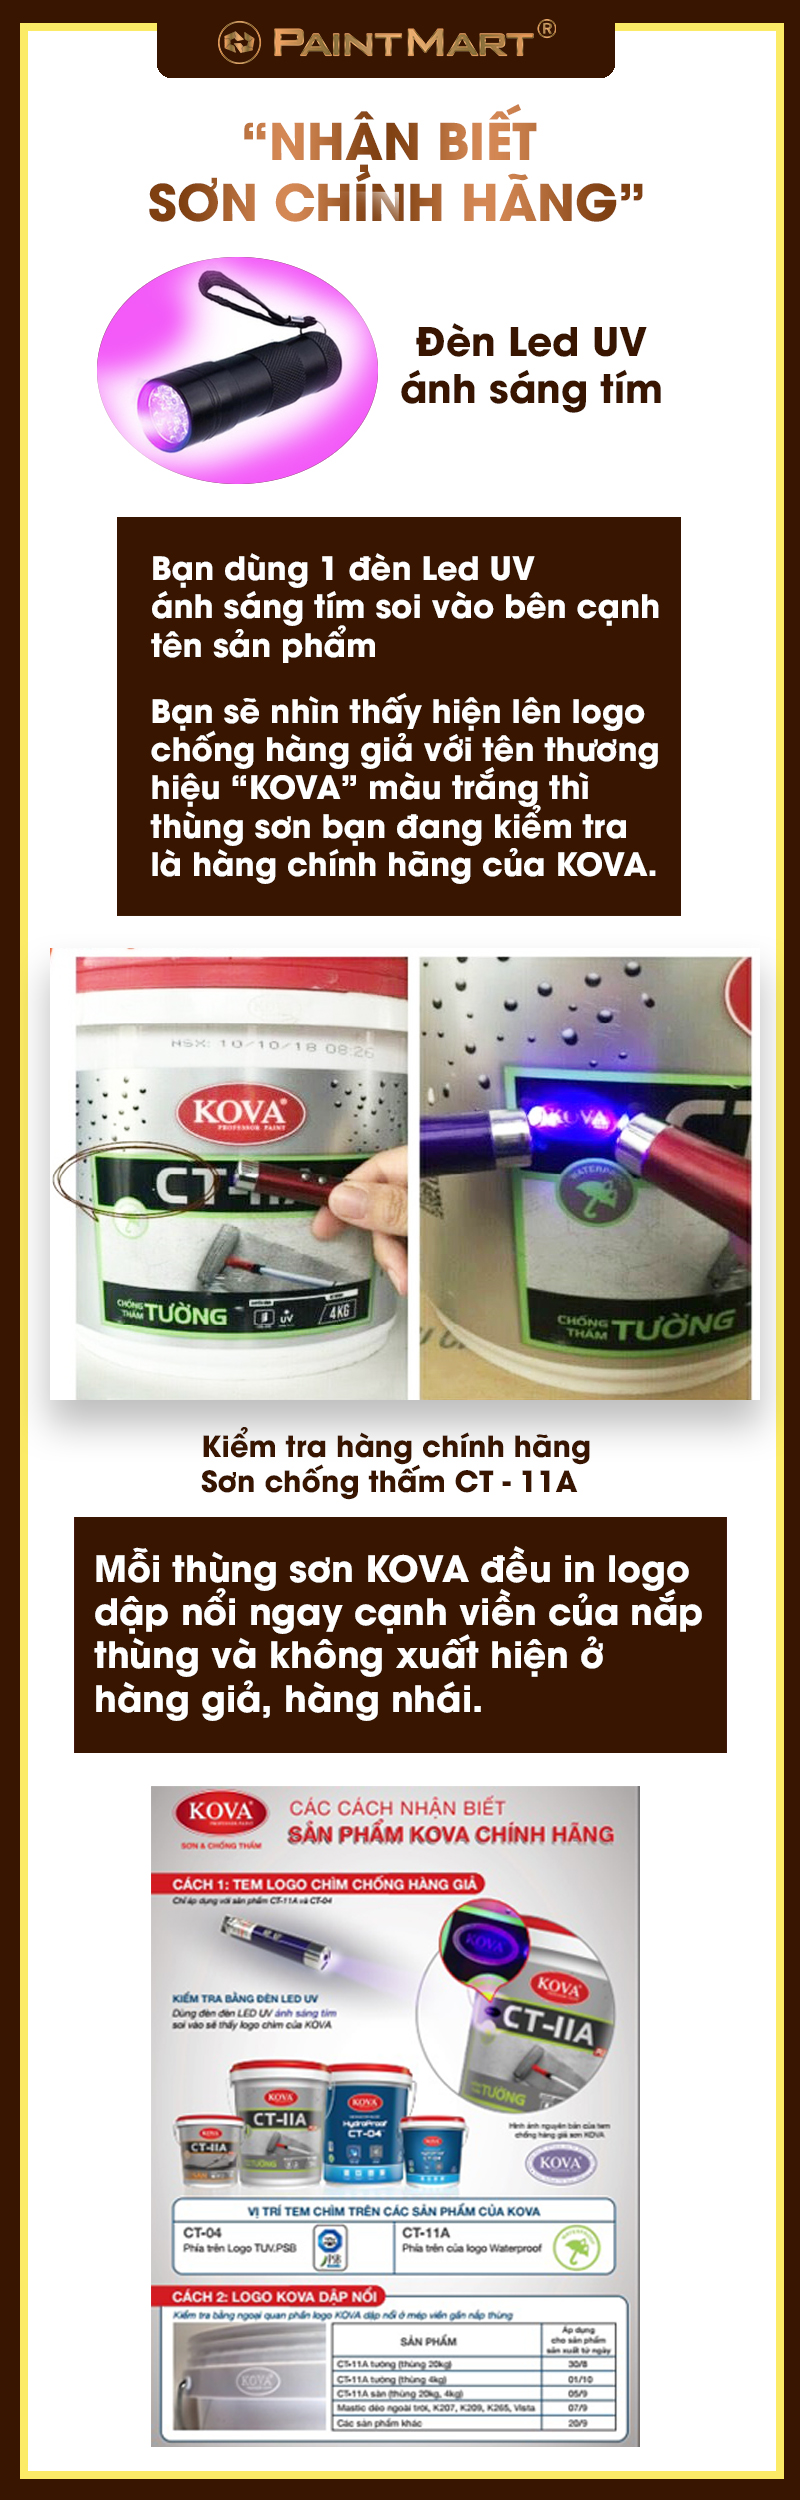 Sơn KOVA giả: Để tránh phải mua phải sản phẩm sơn KOVA giả, hãy truy cập vào hình ảnh để biết thêm về các đặc điểm của sản phẩm sơn chính hãng được phân phối tại cửa hàng.